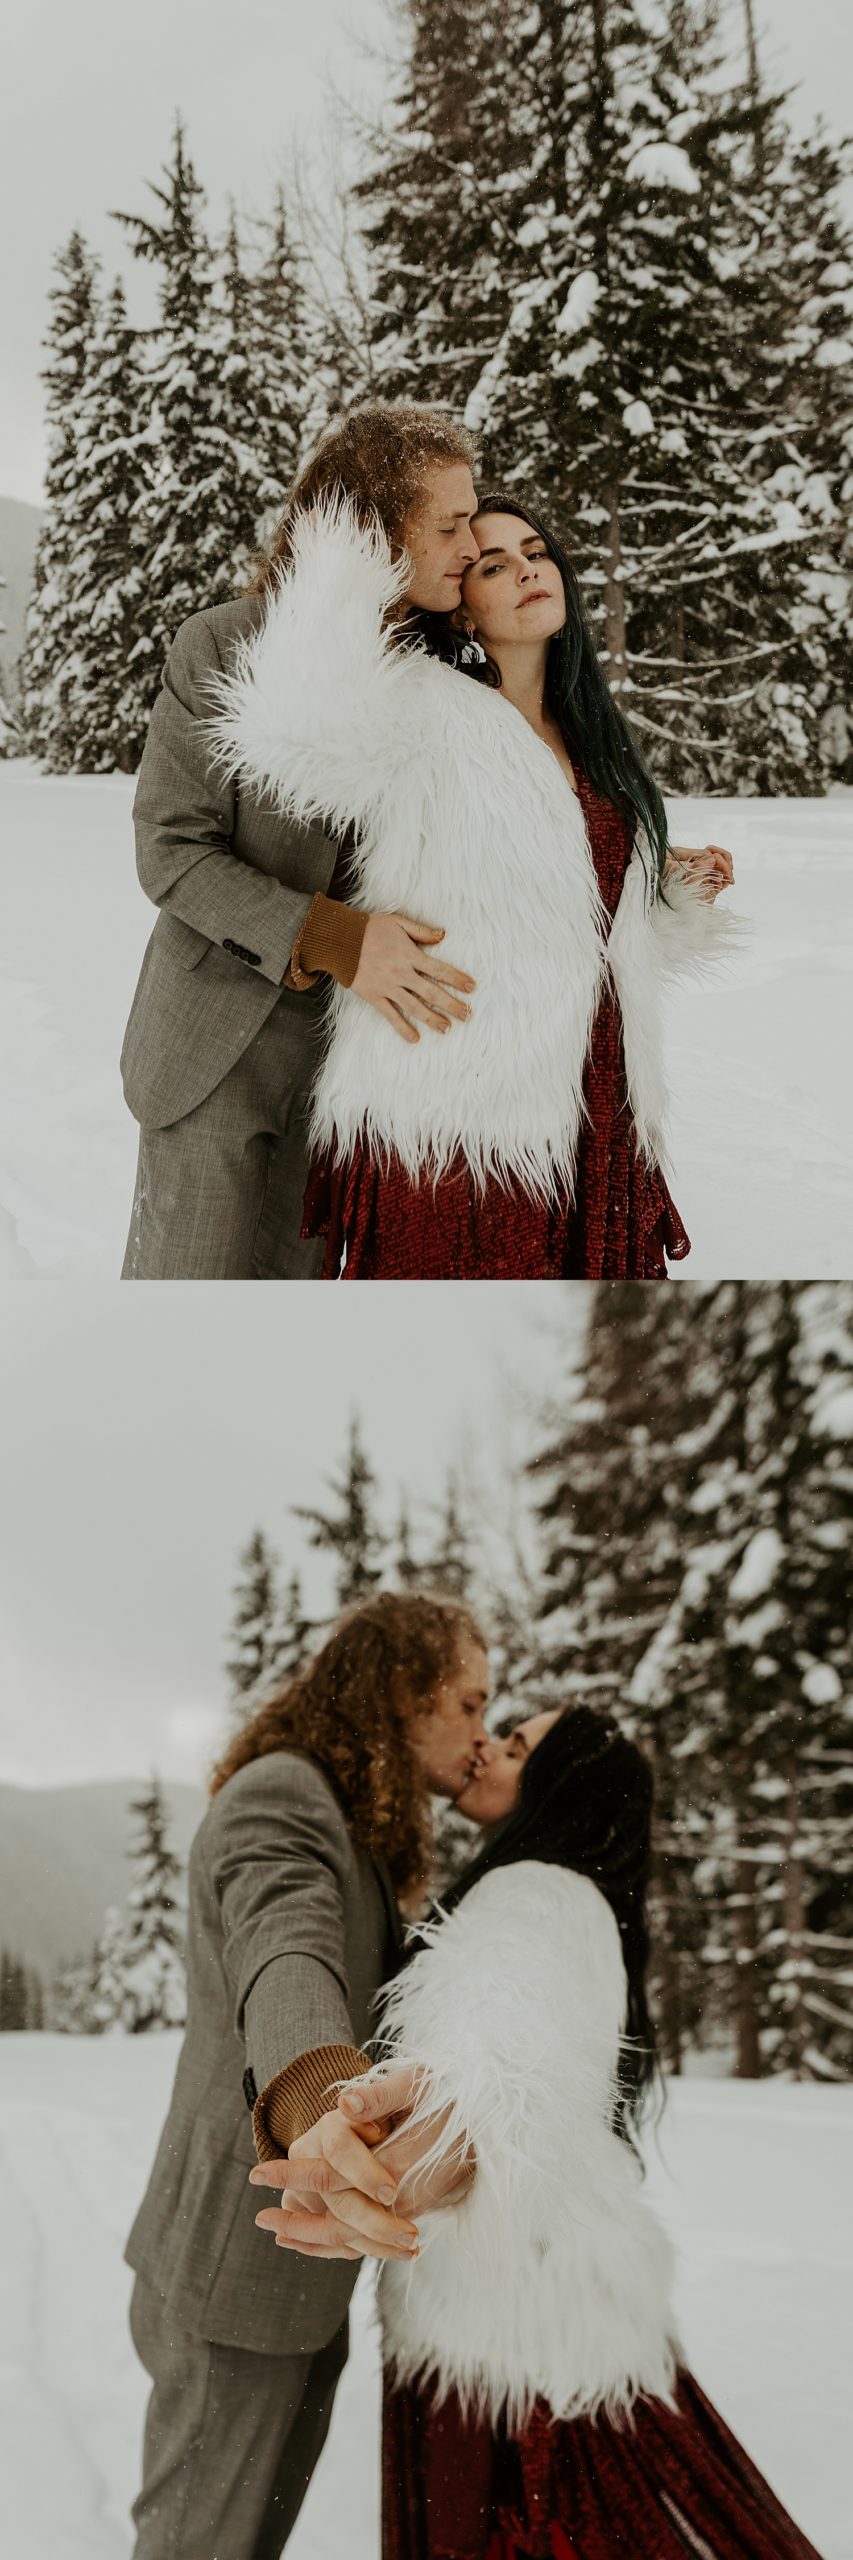 snowy washington winter elopement couples portraits